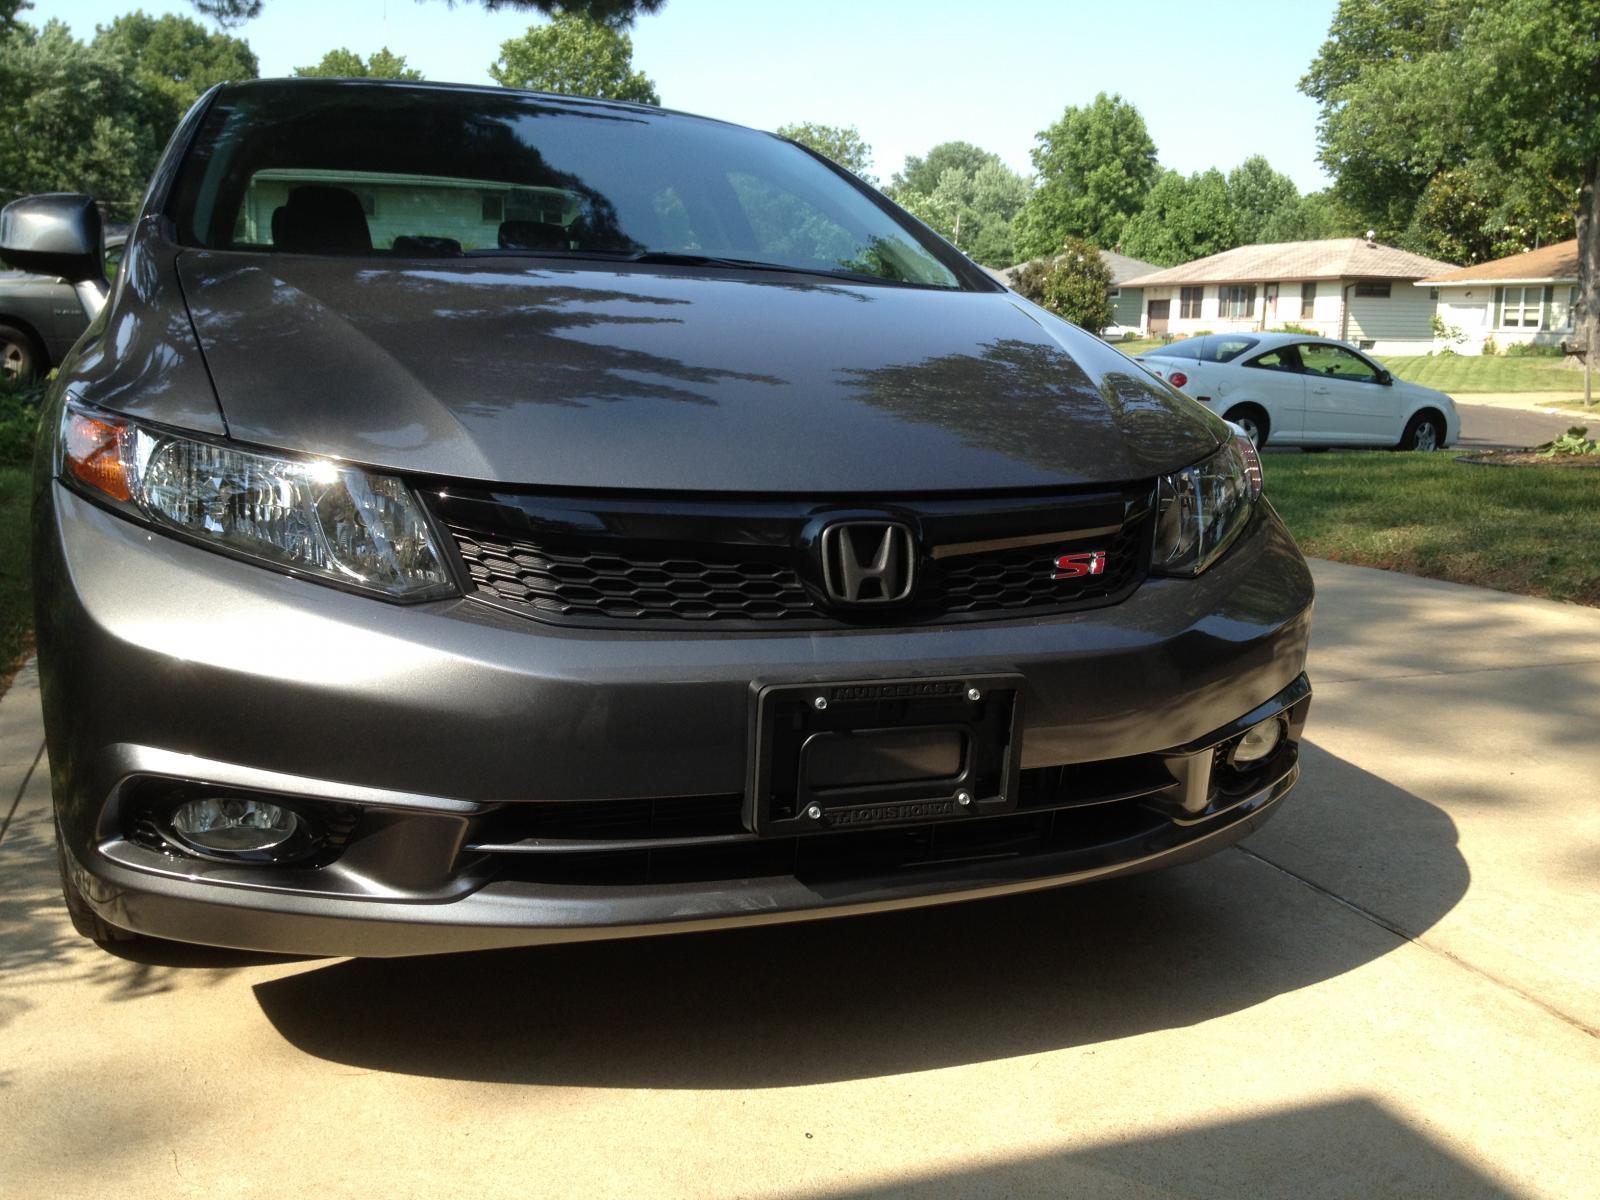 Black Honda Logo - Black Honda Emblem on Grey Civic